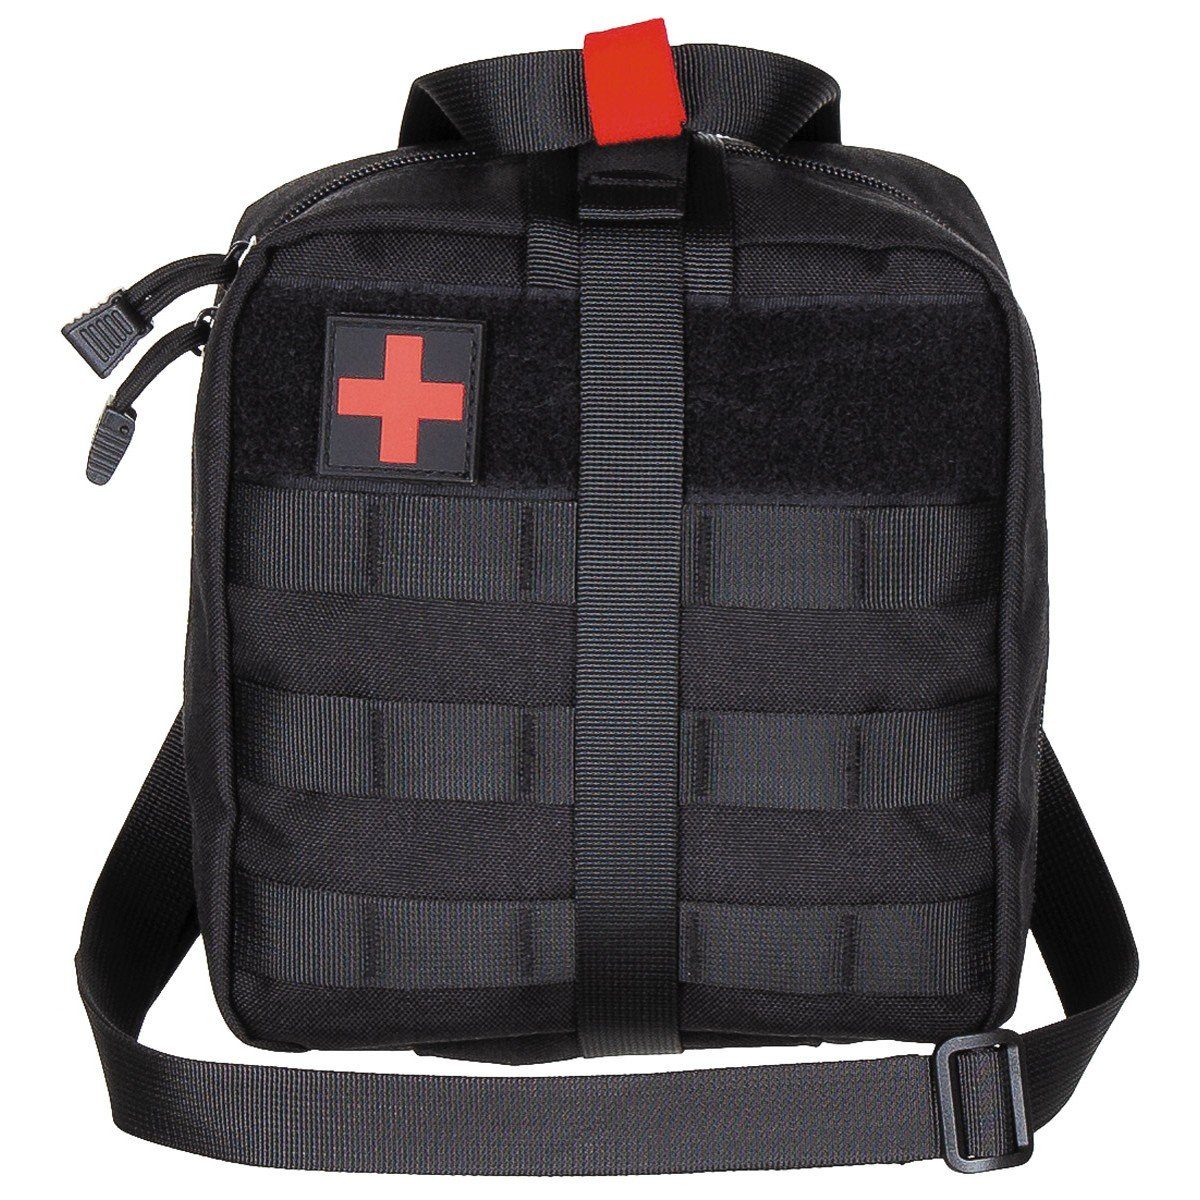 MFH Umhängetasche Tasche, Erste-Hilfe, groß, MOLLE, schwarz (Packung)